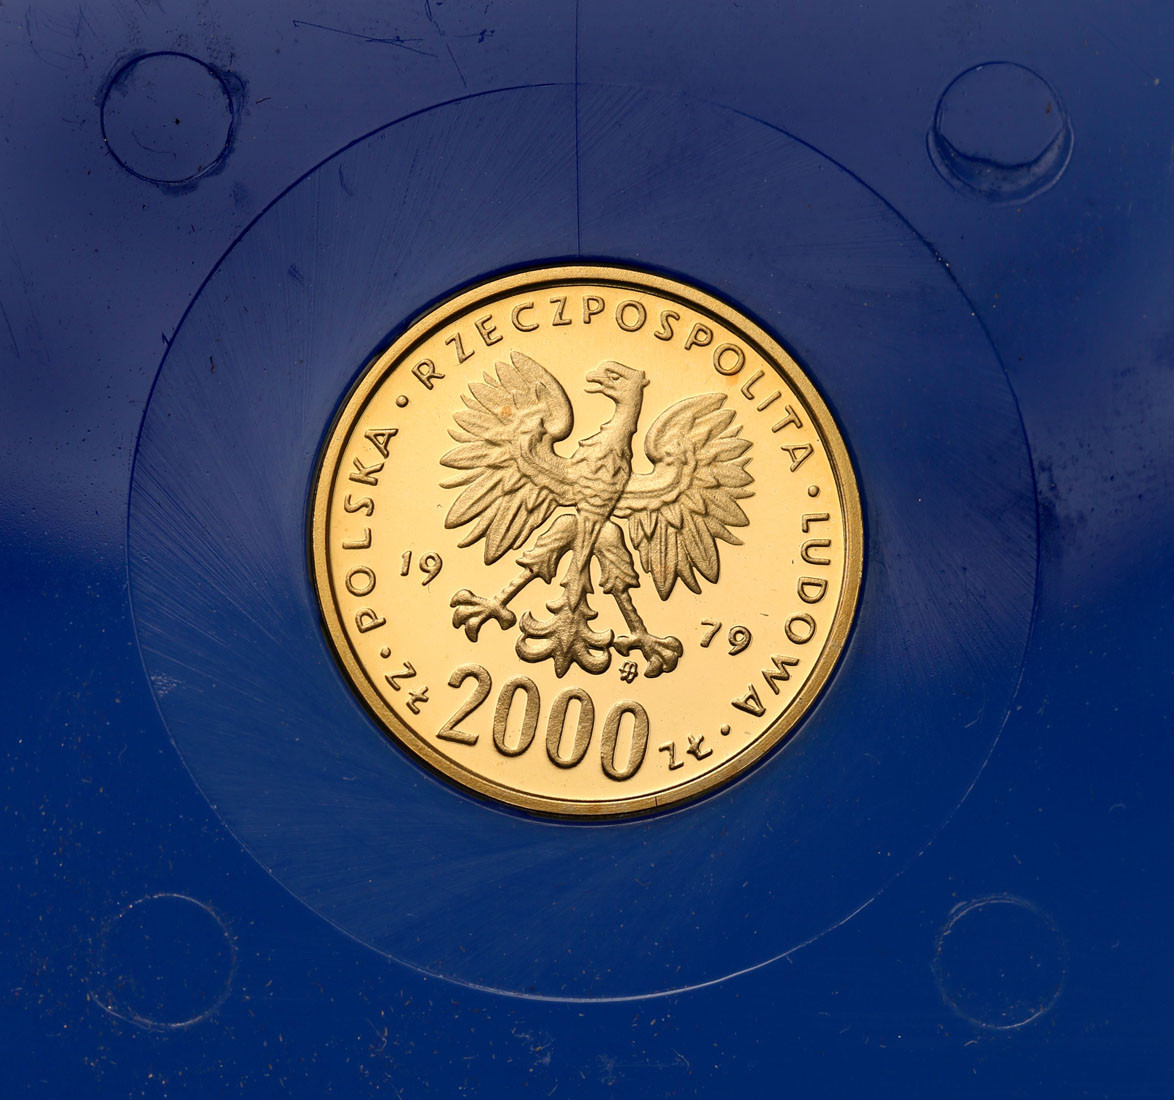 PRL. 2.000 złotych 1979 Mieszko I